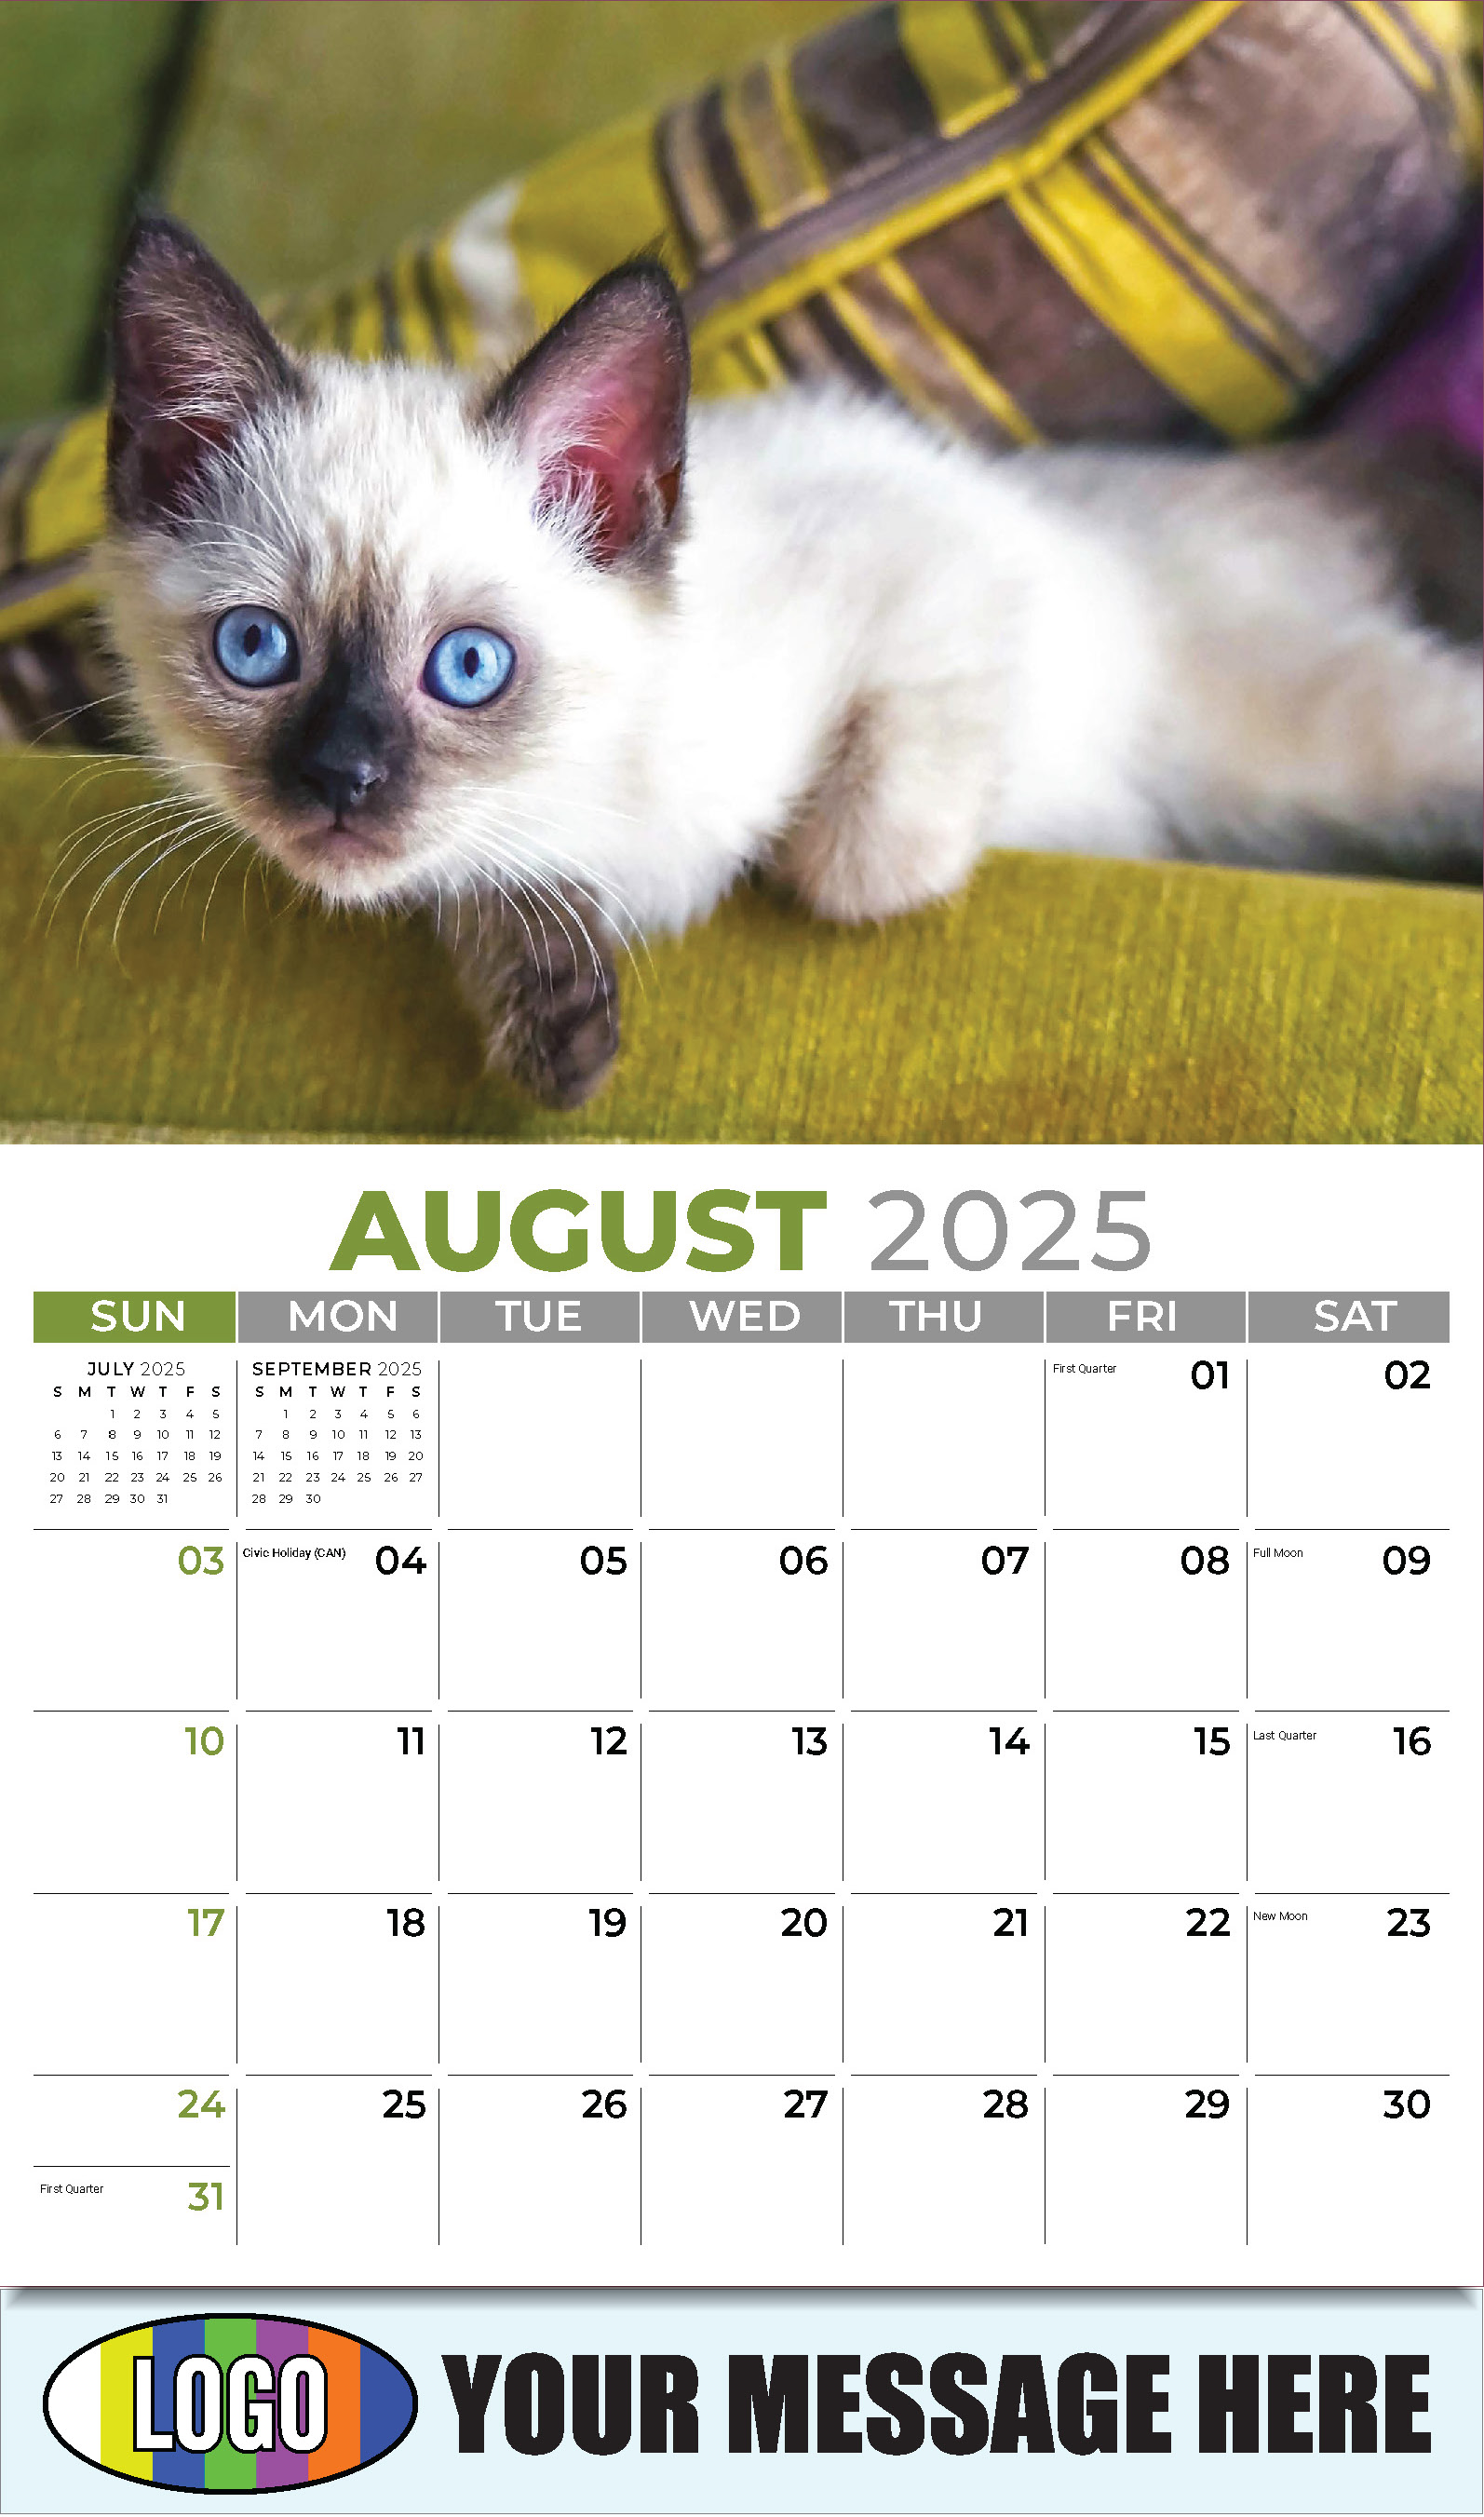 Kittens 2025 Business Promo Wall Calendar - August